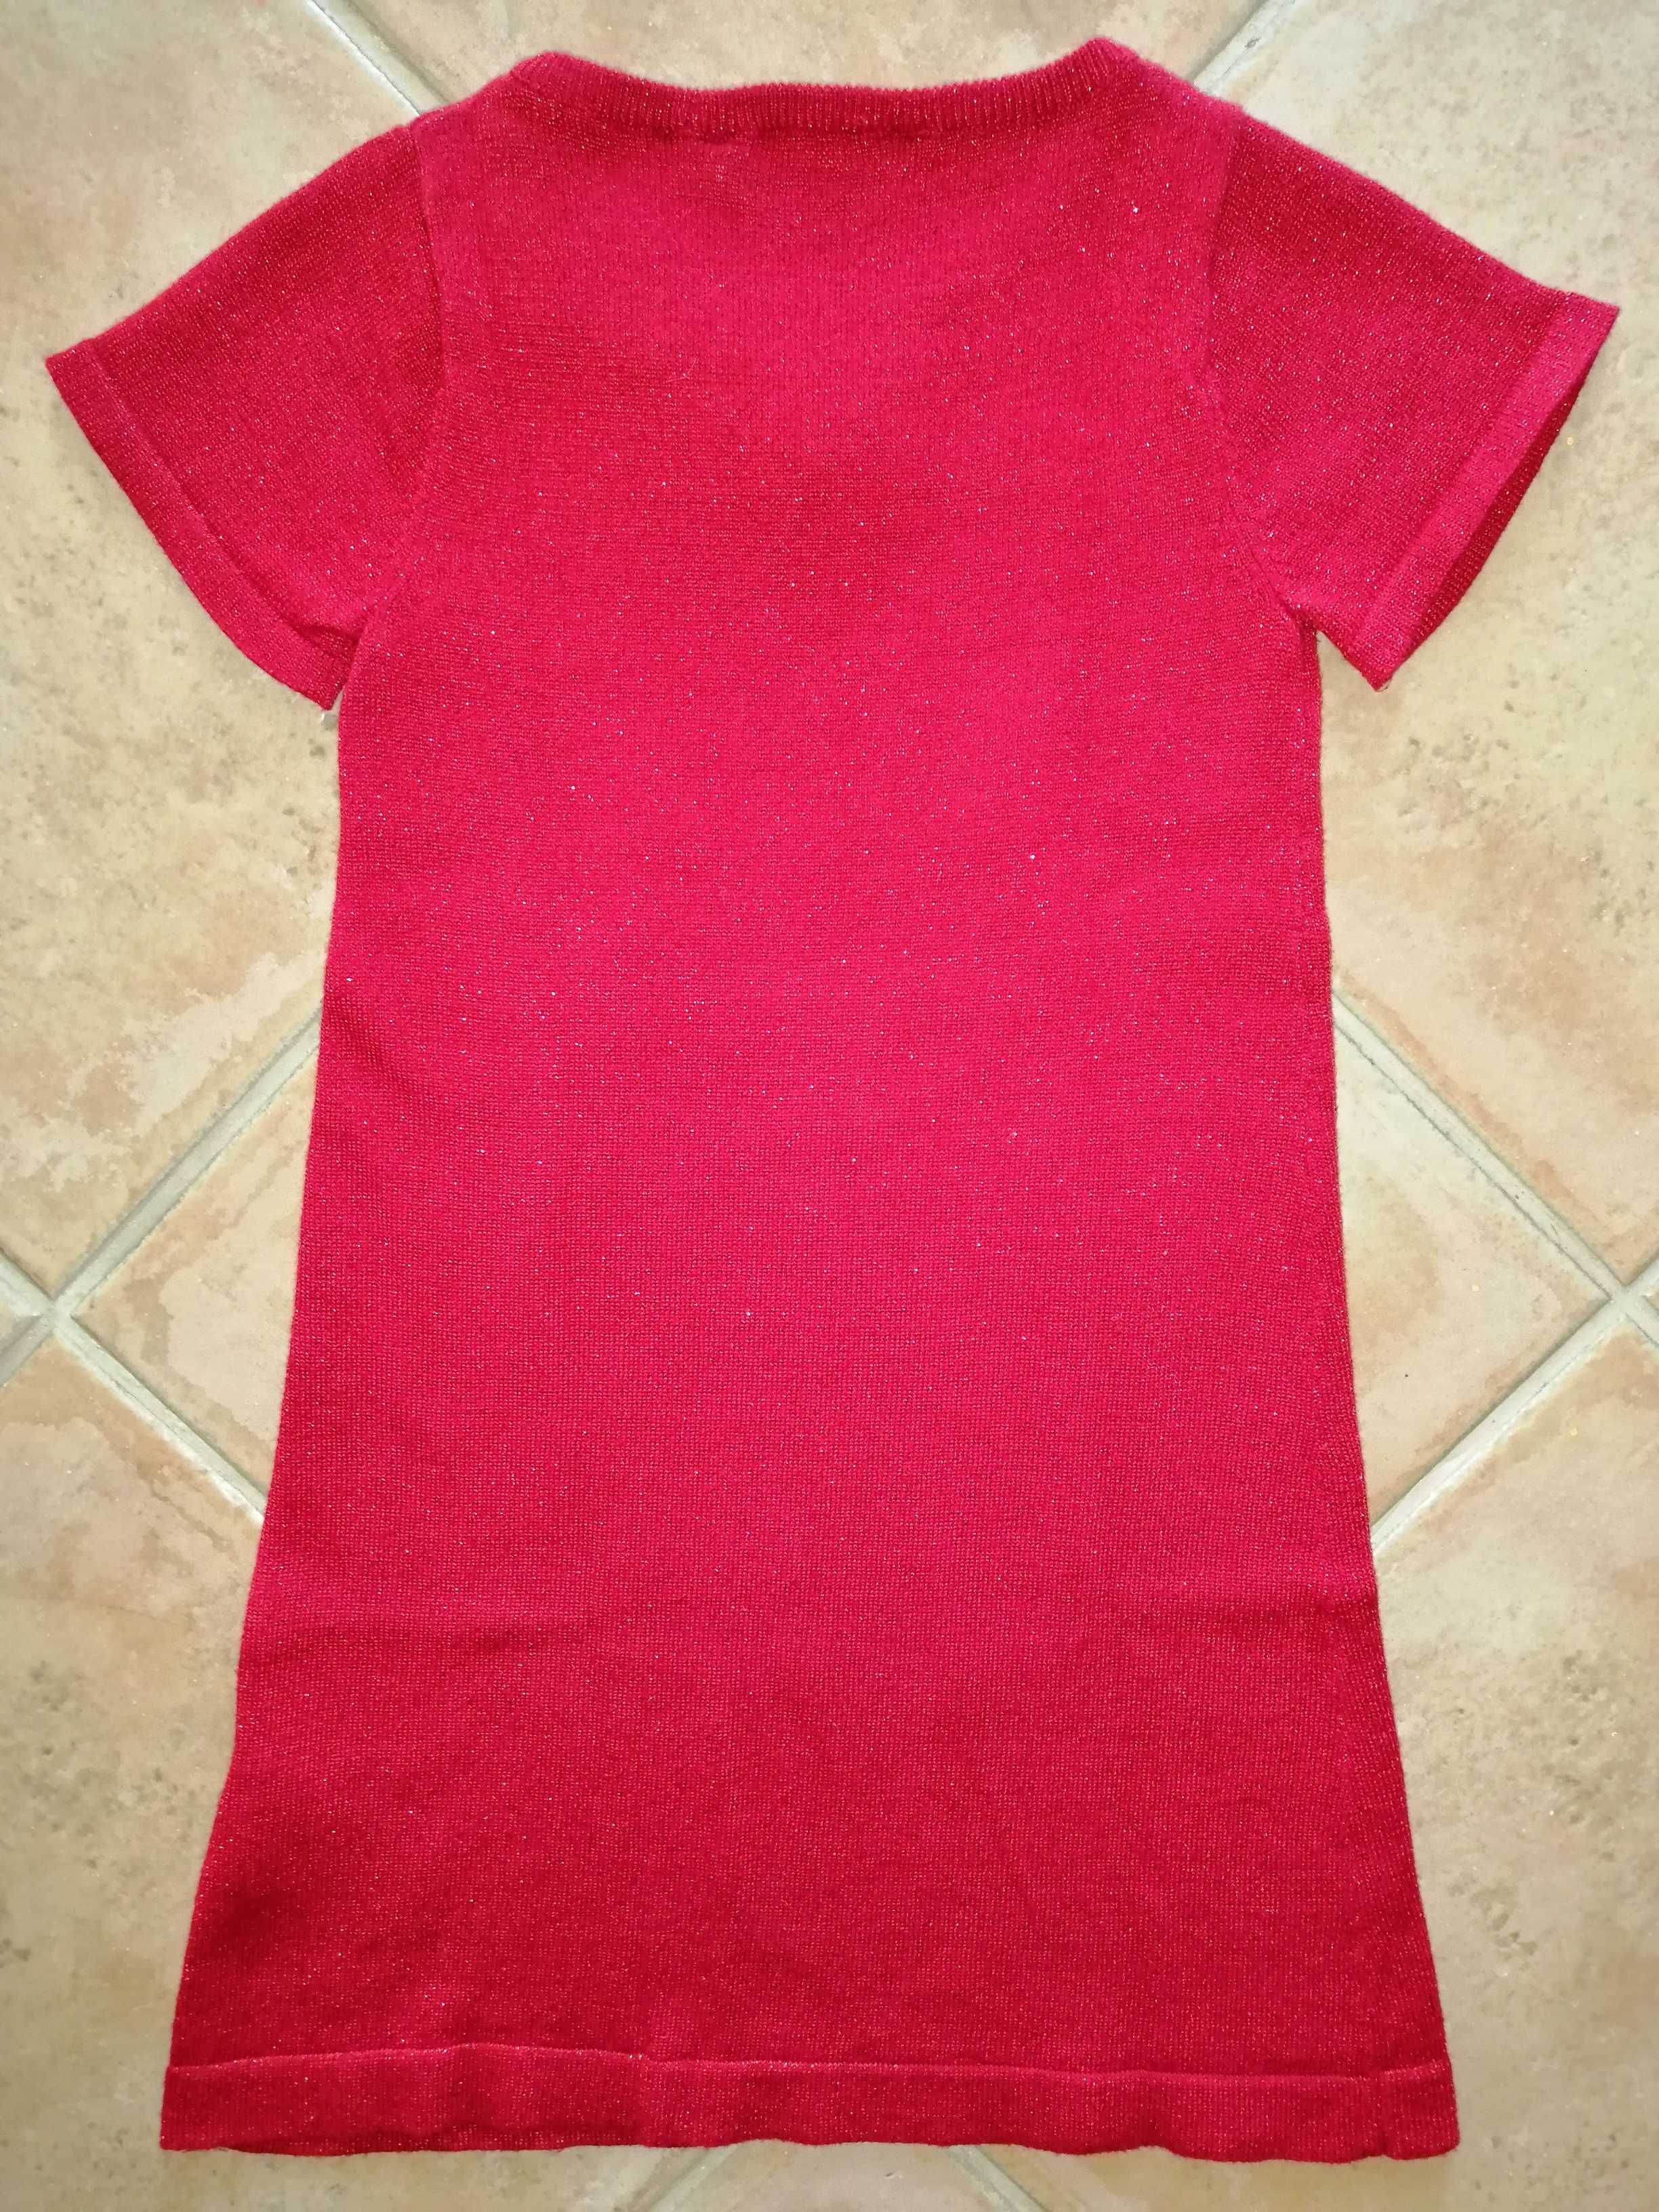 Vestido vermelho brilhante para menina tamanho 5/6 anos marca H&M